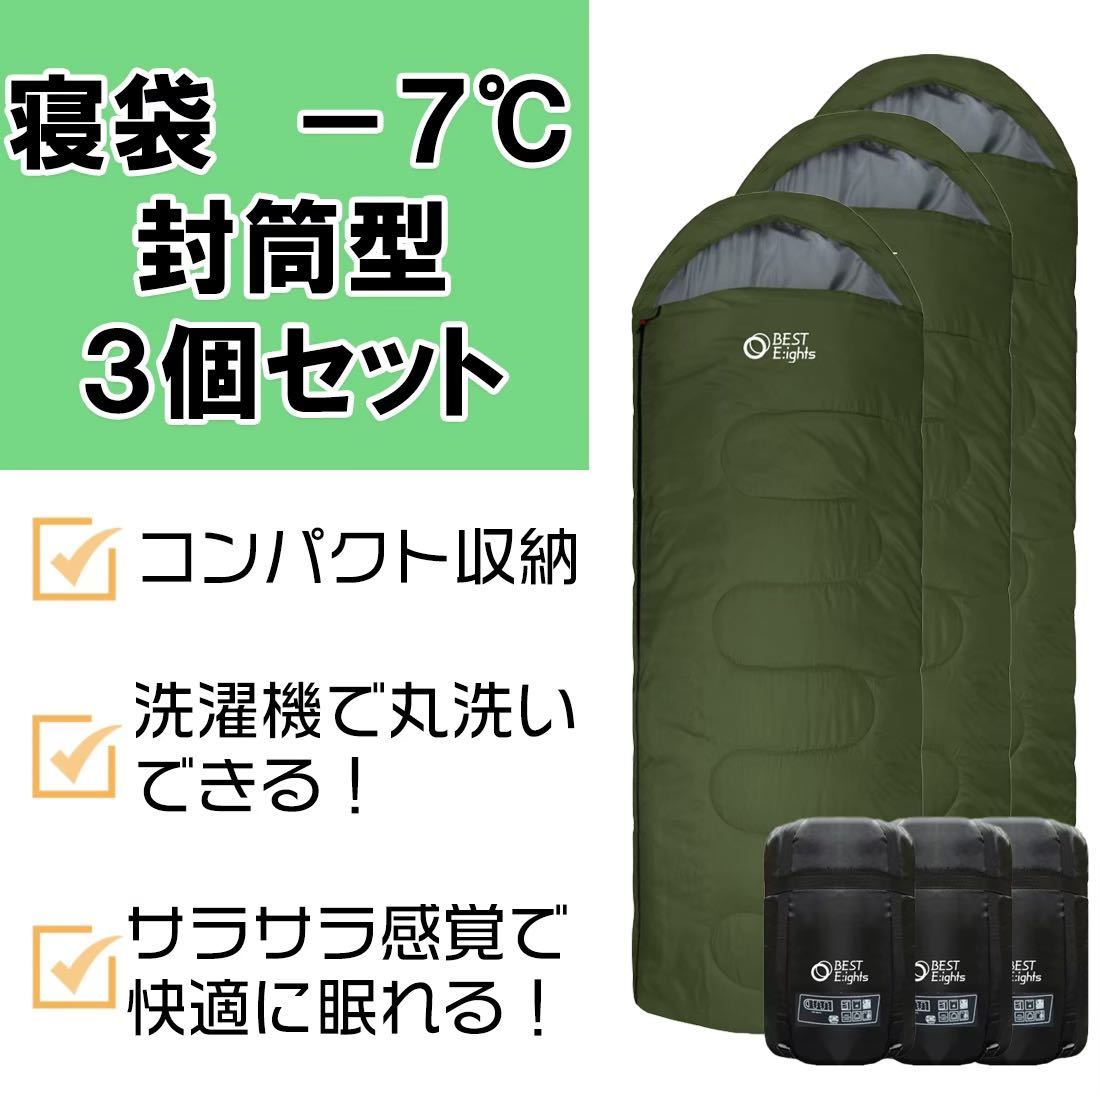 【新品】寝袋 シュラフ コンパクト 封筒型 オールシーズン 最低使用温度-7℃